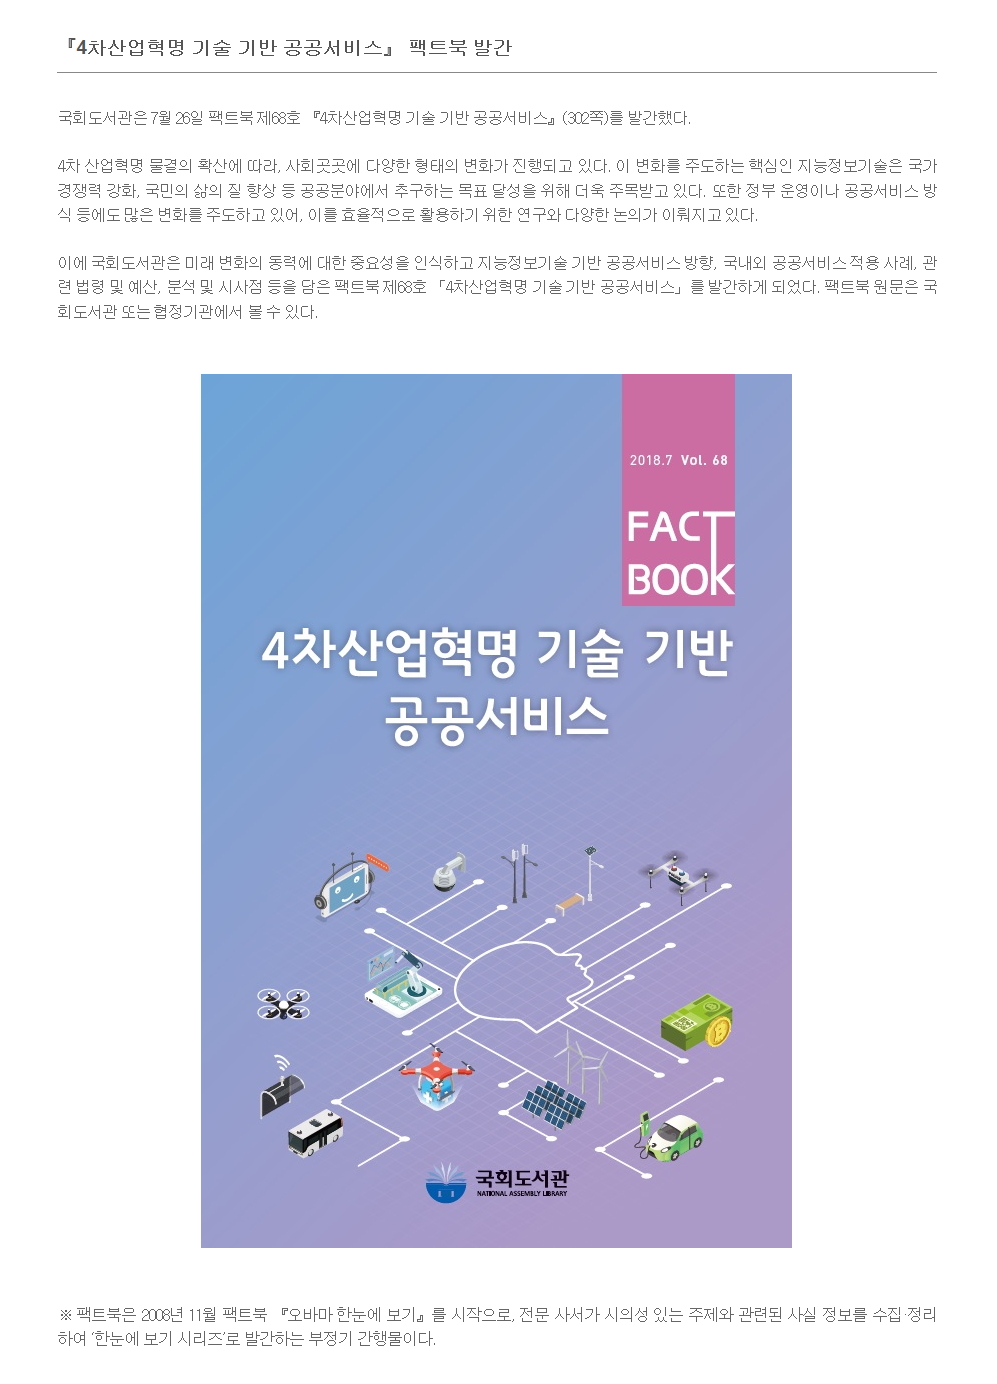 4차산업혁명 기술 기반 공공서비스 팩트북 발간